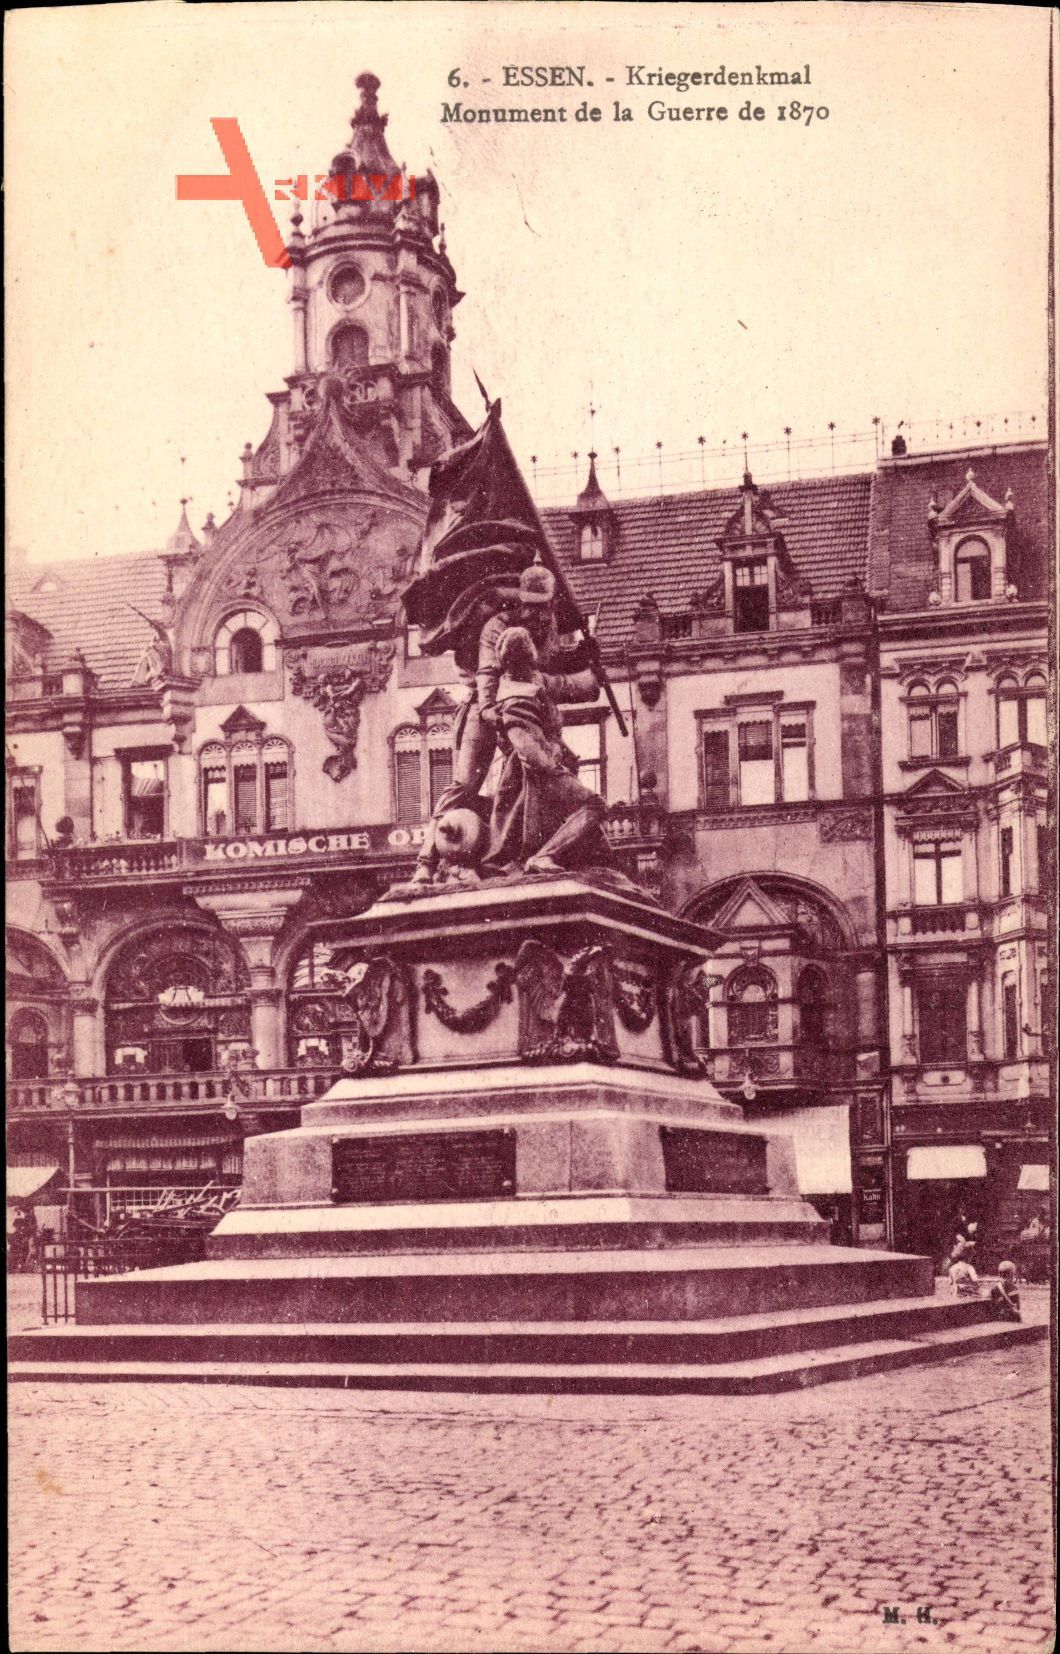 Essen im Ruhrgebiet, Kriegerdenkmal, Monument de la Guerre de 1870